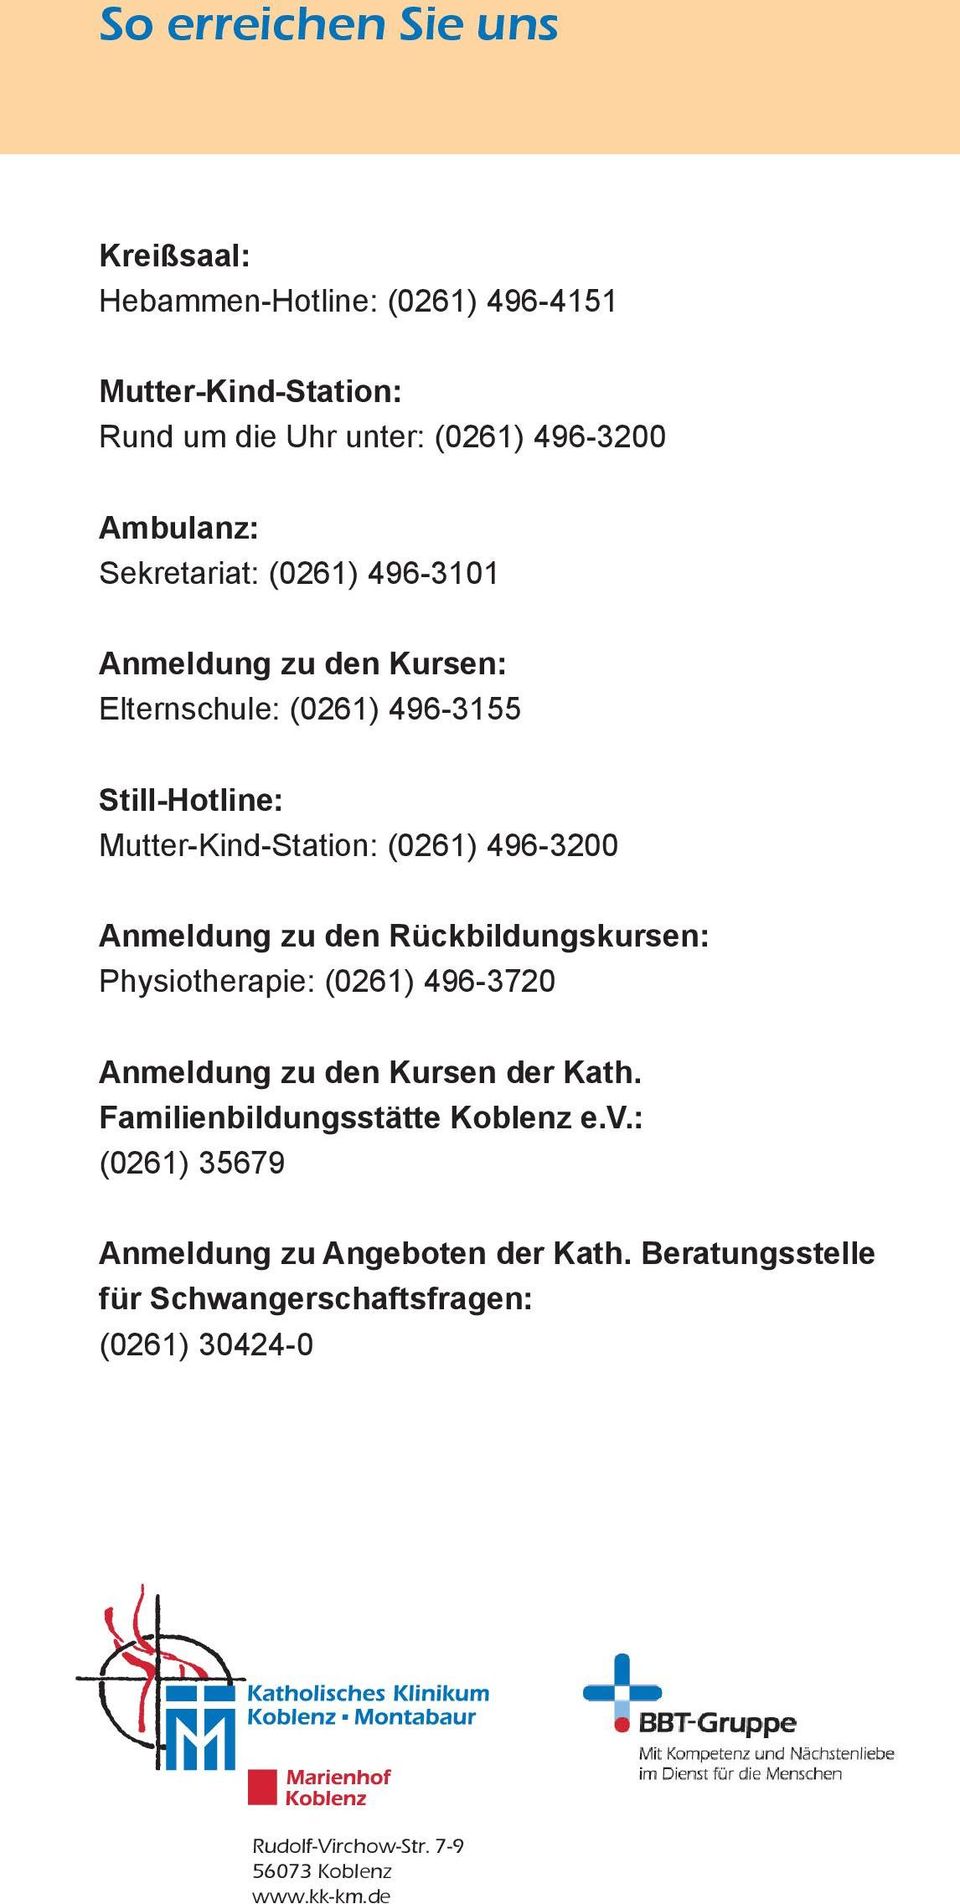 Anmeldung zu den Rückbildungskursen: Physiotherapie: (0261) 496-3720 Anmeldung zu den Kursen der Kath. Familienbildungsstätte Koblenz e.v.